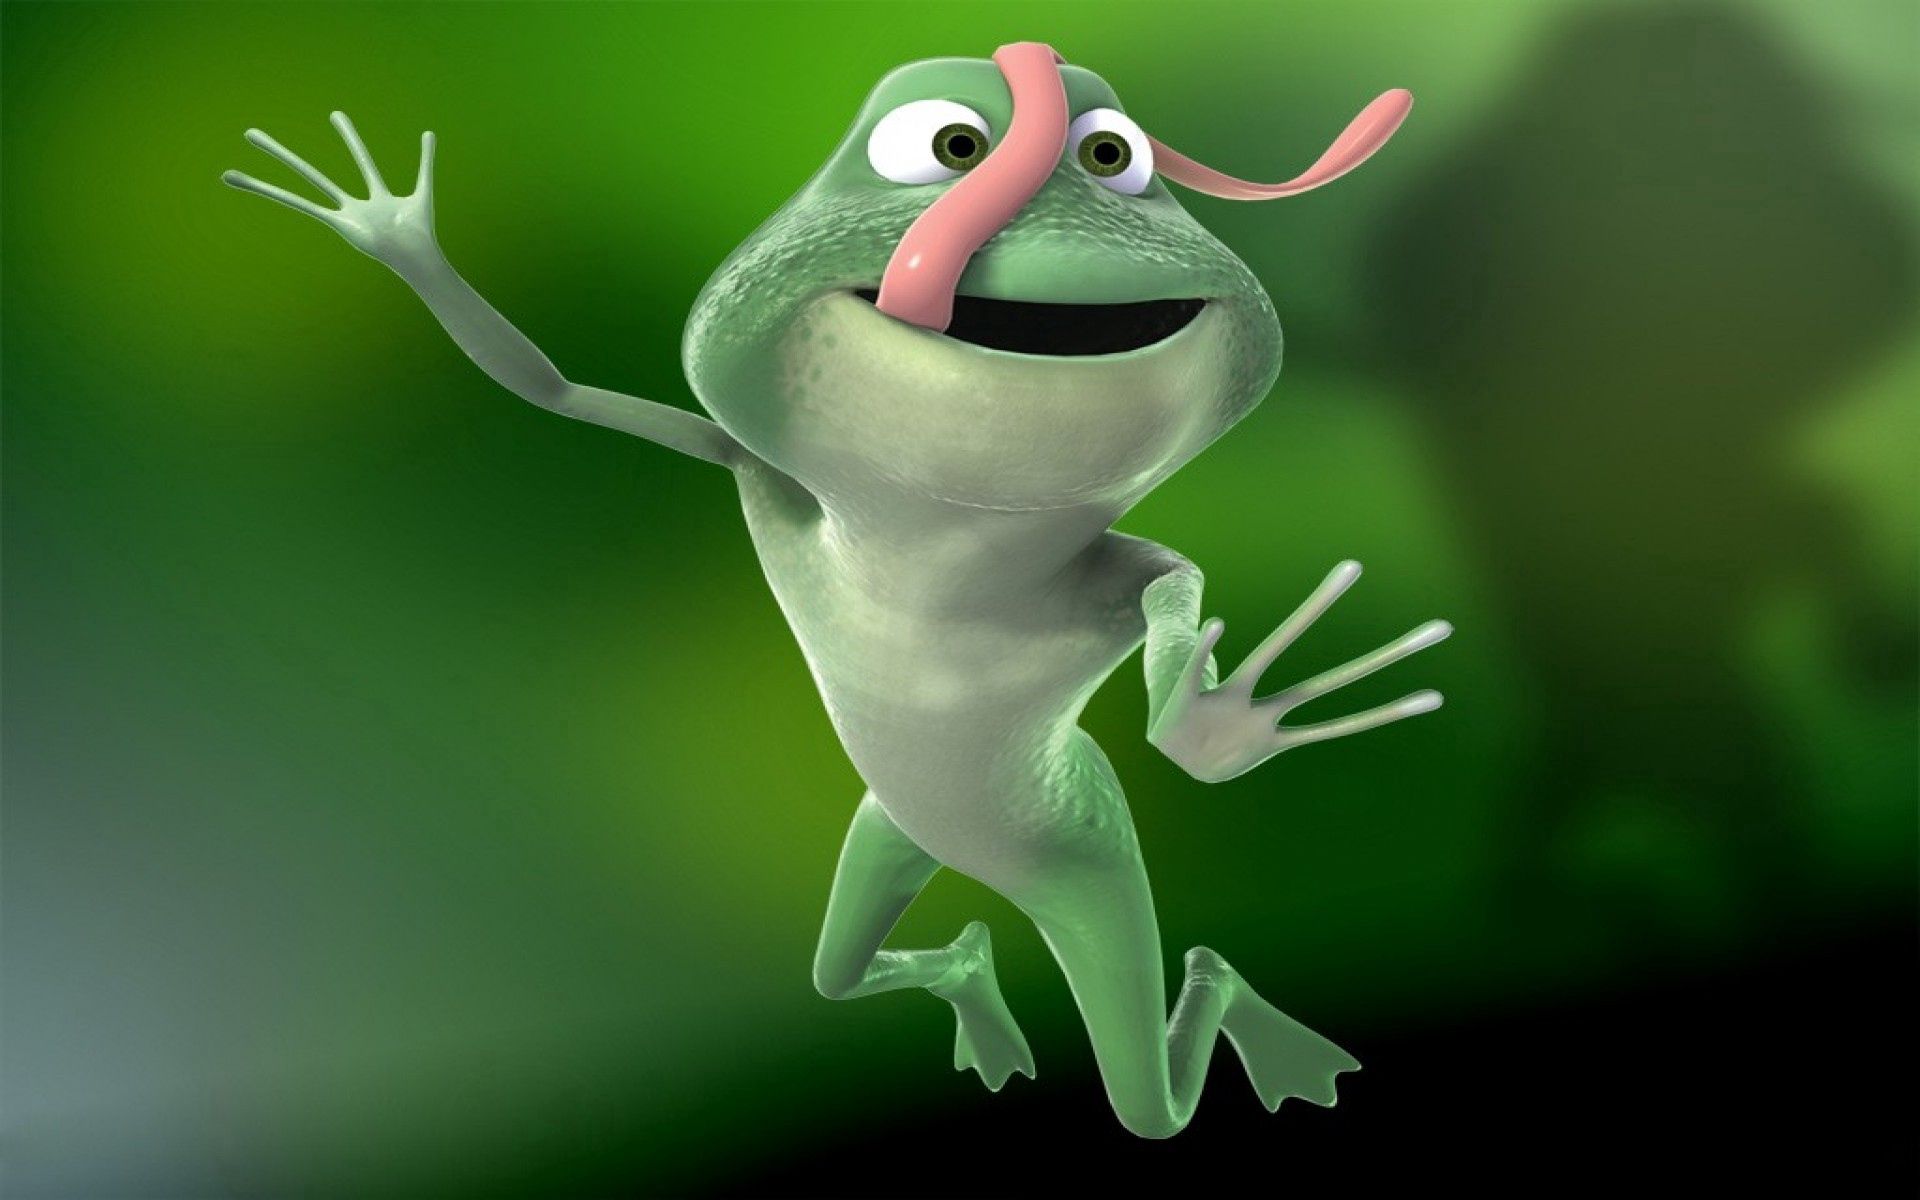 3d, green, pink, bounce, jump, language, tongue, long, frog Full HD